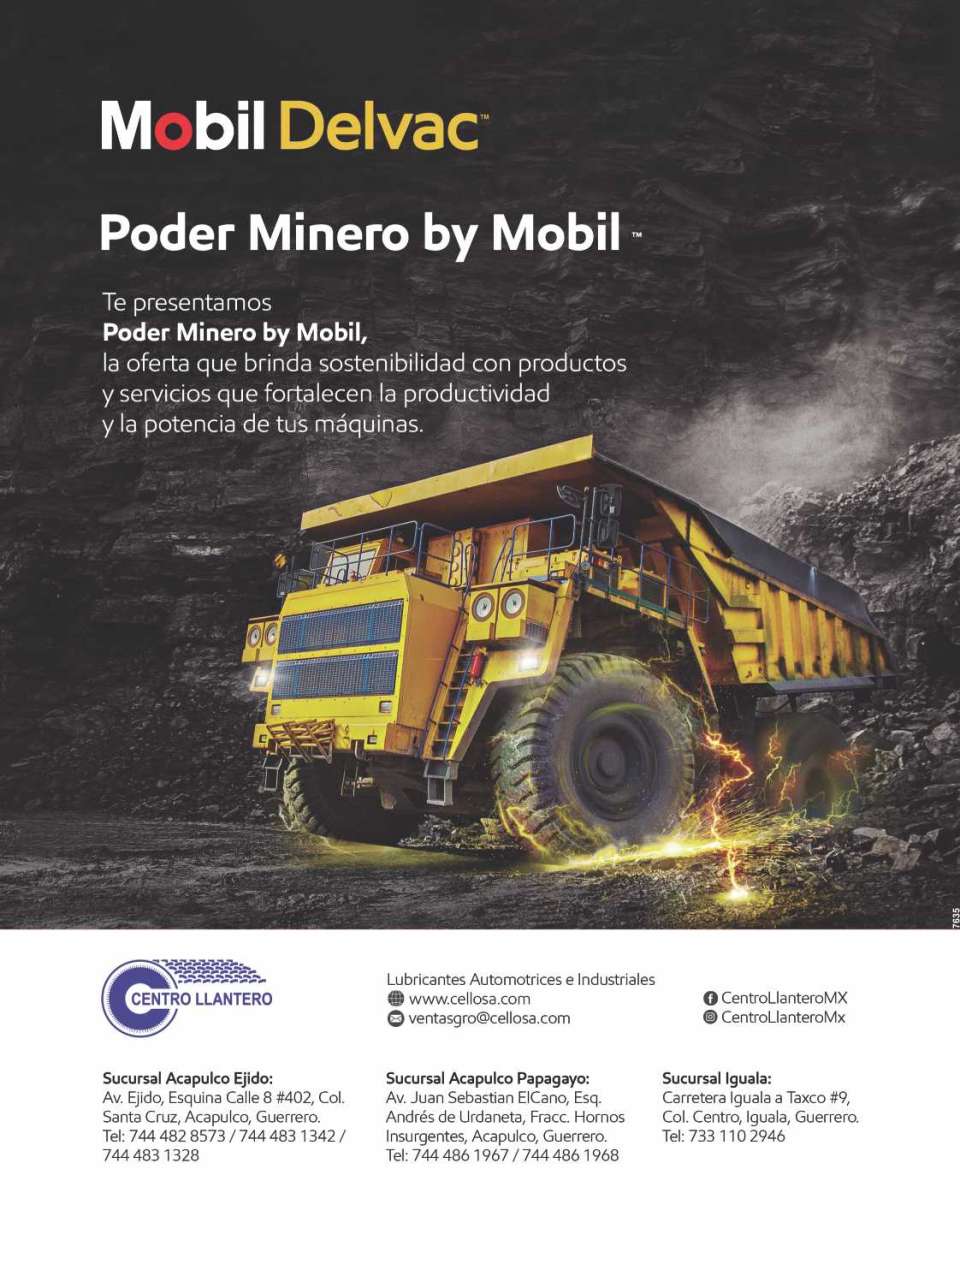 LUBRICANTES Automotrices e Industriales Mobil Delvac. Poder Minero by Mobil la oferta que brinda sostenibilidad con Productos y Servicios que fortalecen la productividad y la potencia de tus maquinas.